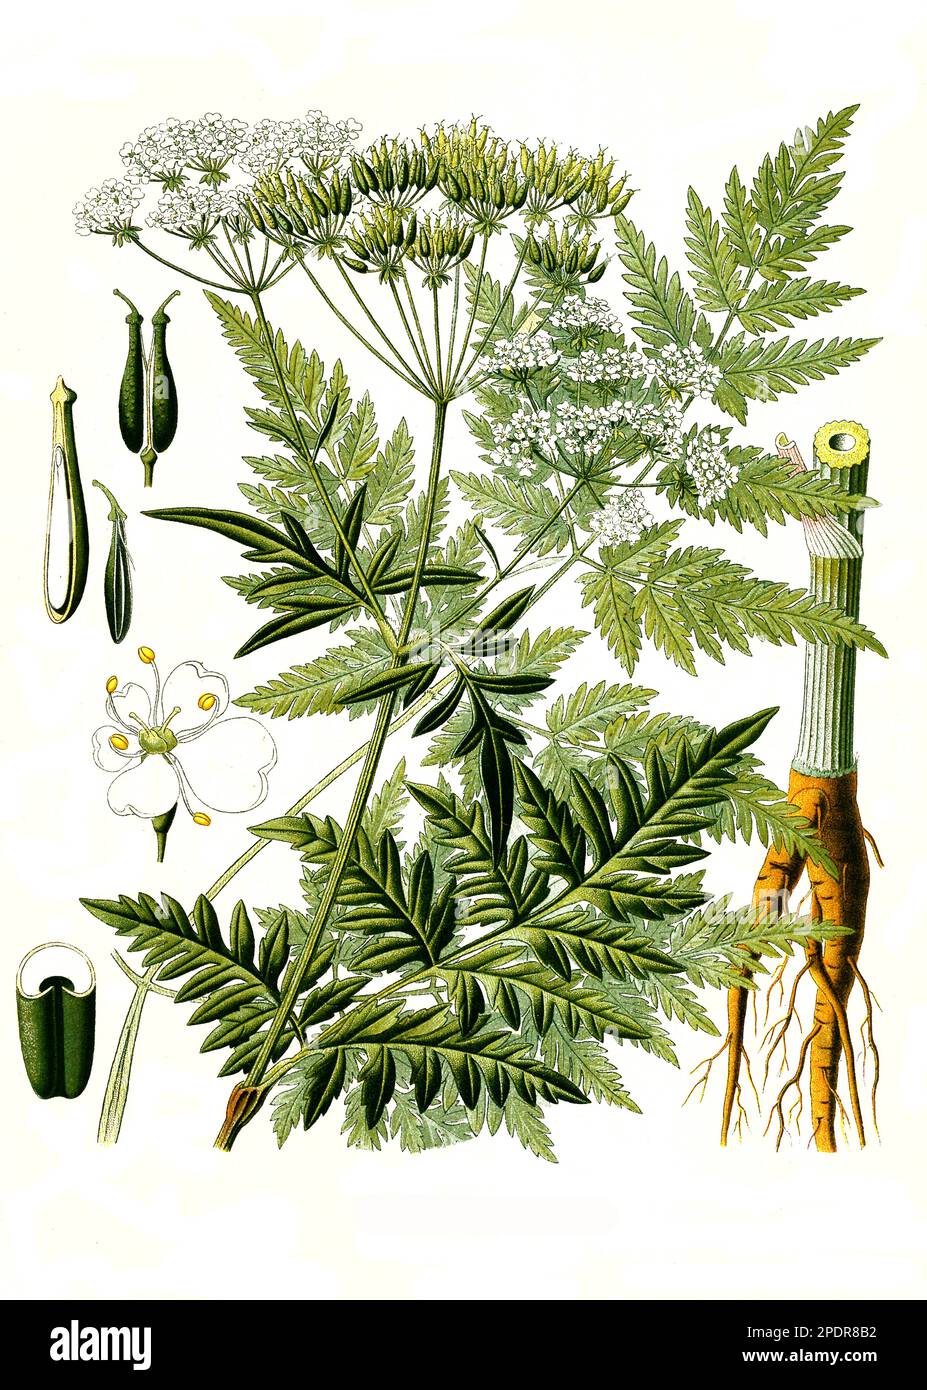 Heilpflanze, Wiesen-Kerbel (Anthriscus sylvestris) ist eine Pflanzenart aus der Gattung Kerbel, Historisch, digital restaurierte Reproduktion von einer Vorlage aus dem 18. Jahrhundert Stock Photo